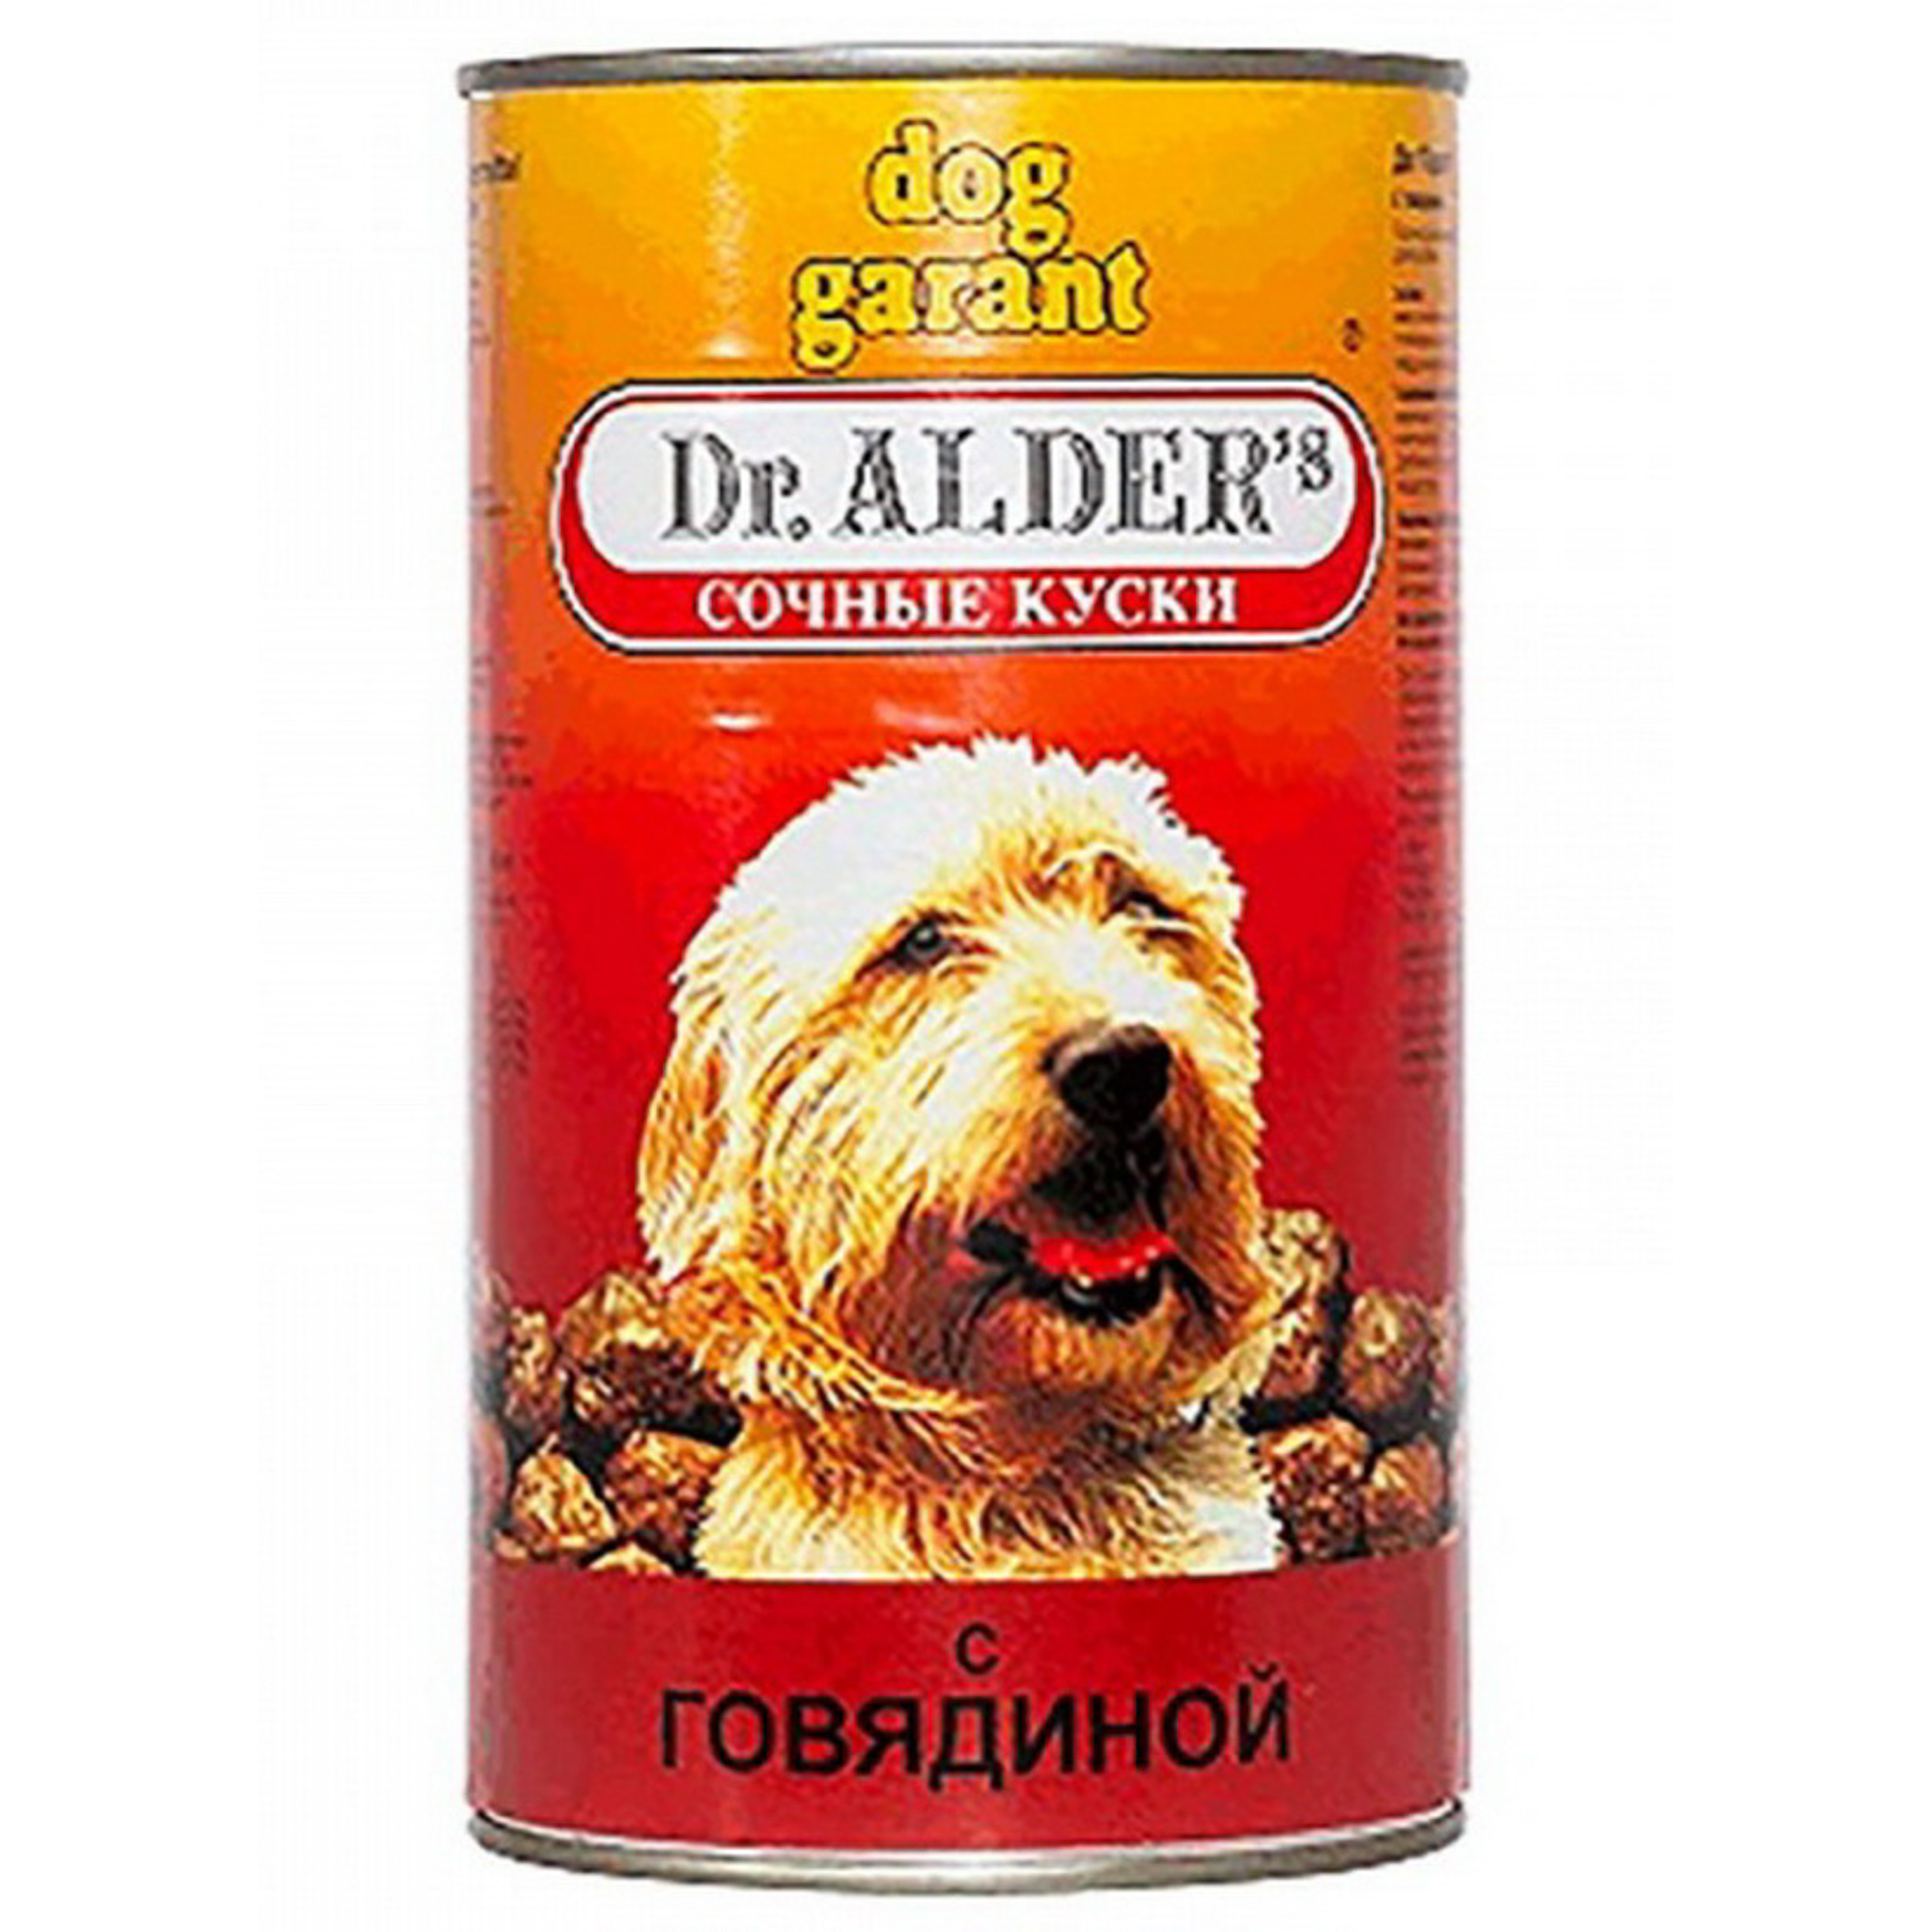 фото Корм для собак dr. alder's дог гарант сочные кусочки в соусе говядина 1230 г